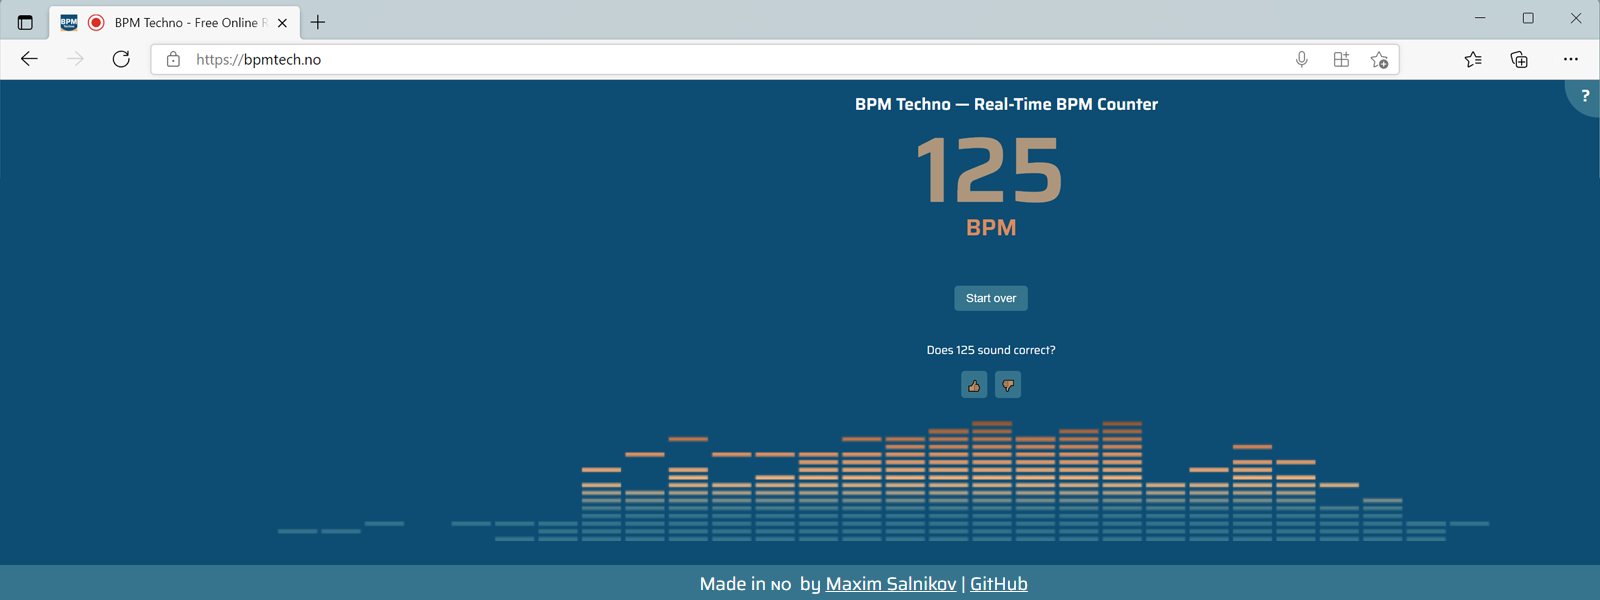 Στιγμιότυπο οθόνης από την εφαρμογή BPM Techno